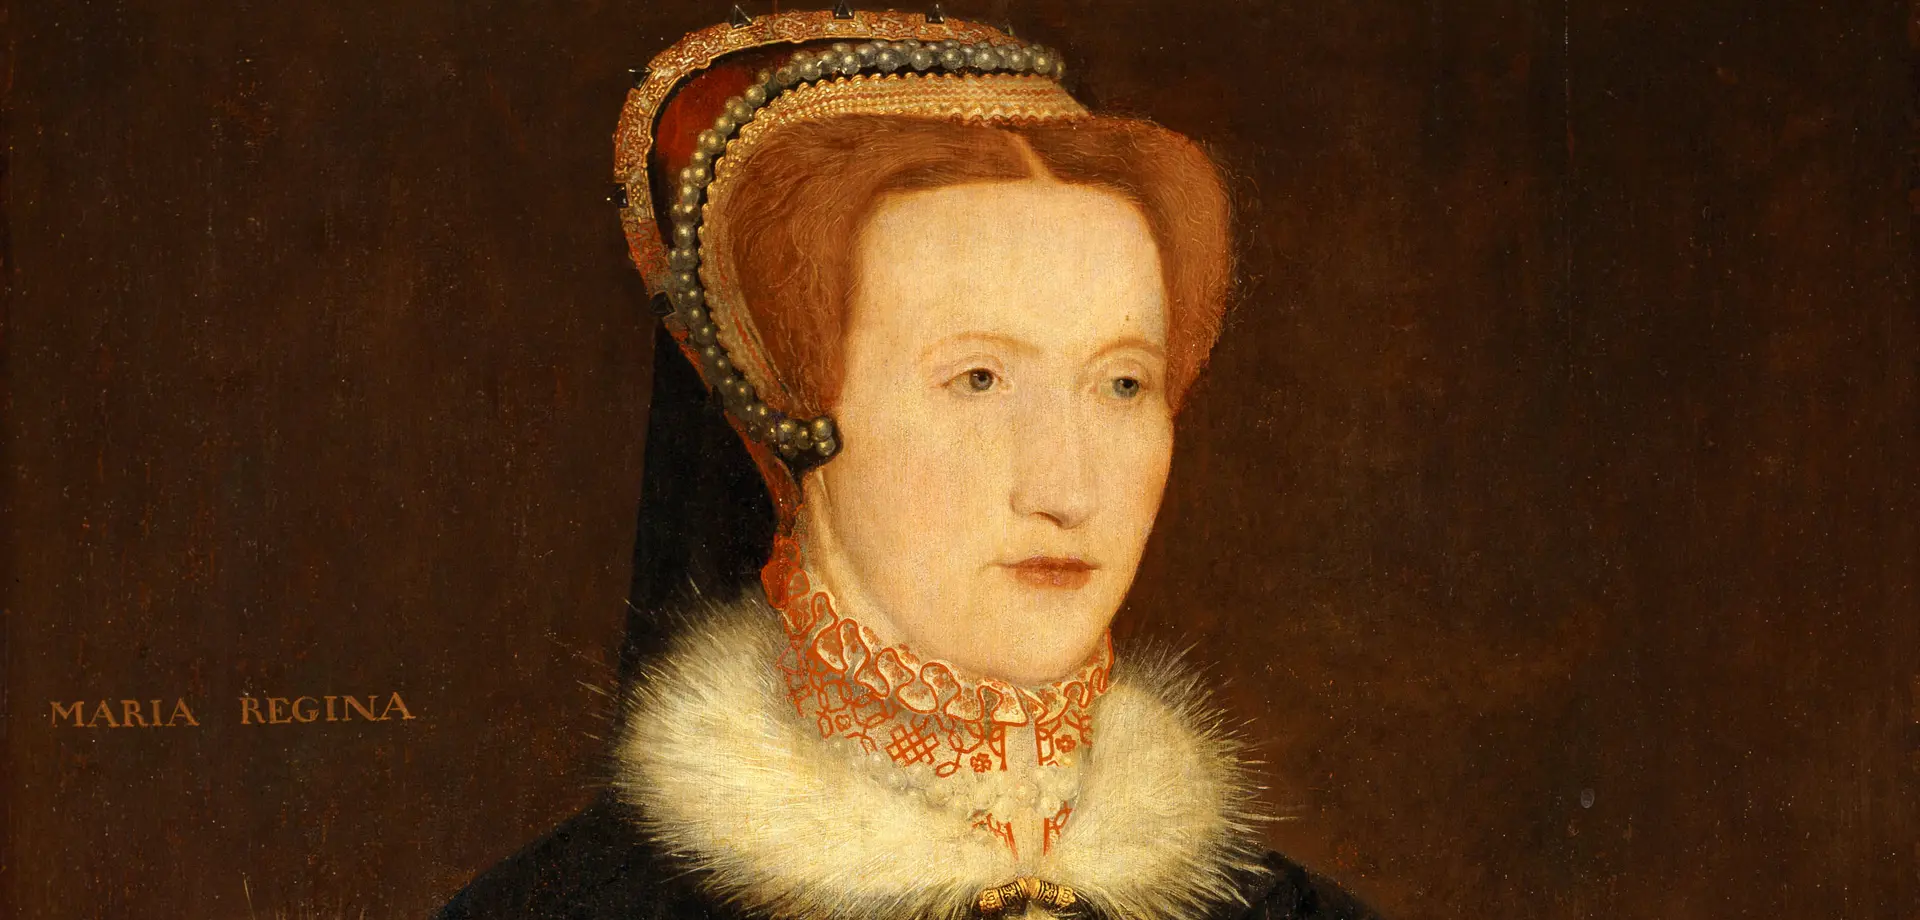 Bess of Hardwick, Countess of Shrewsbury (c.1521/22-1608)